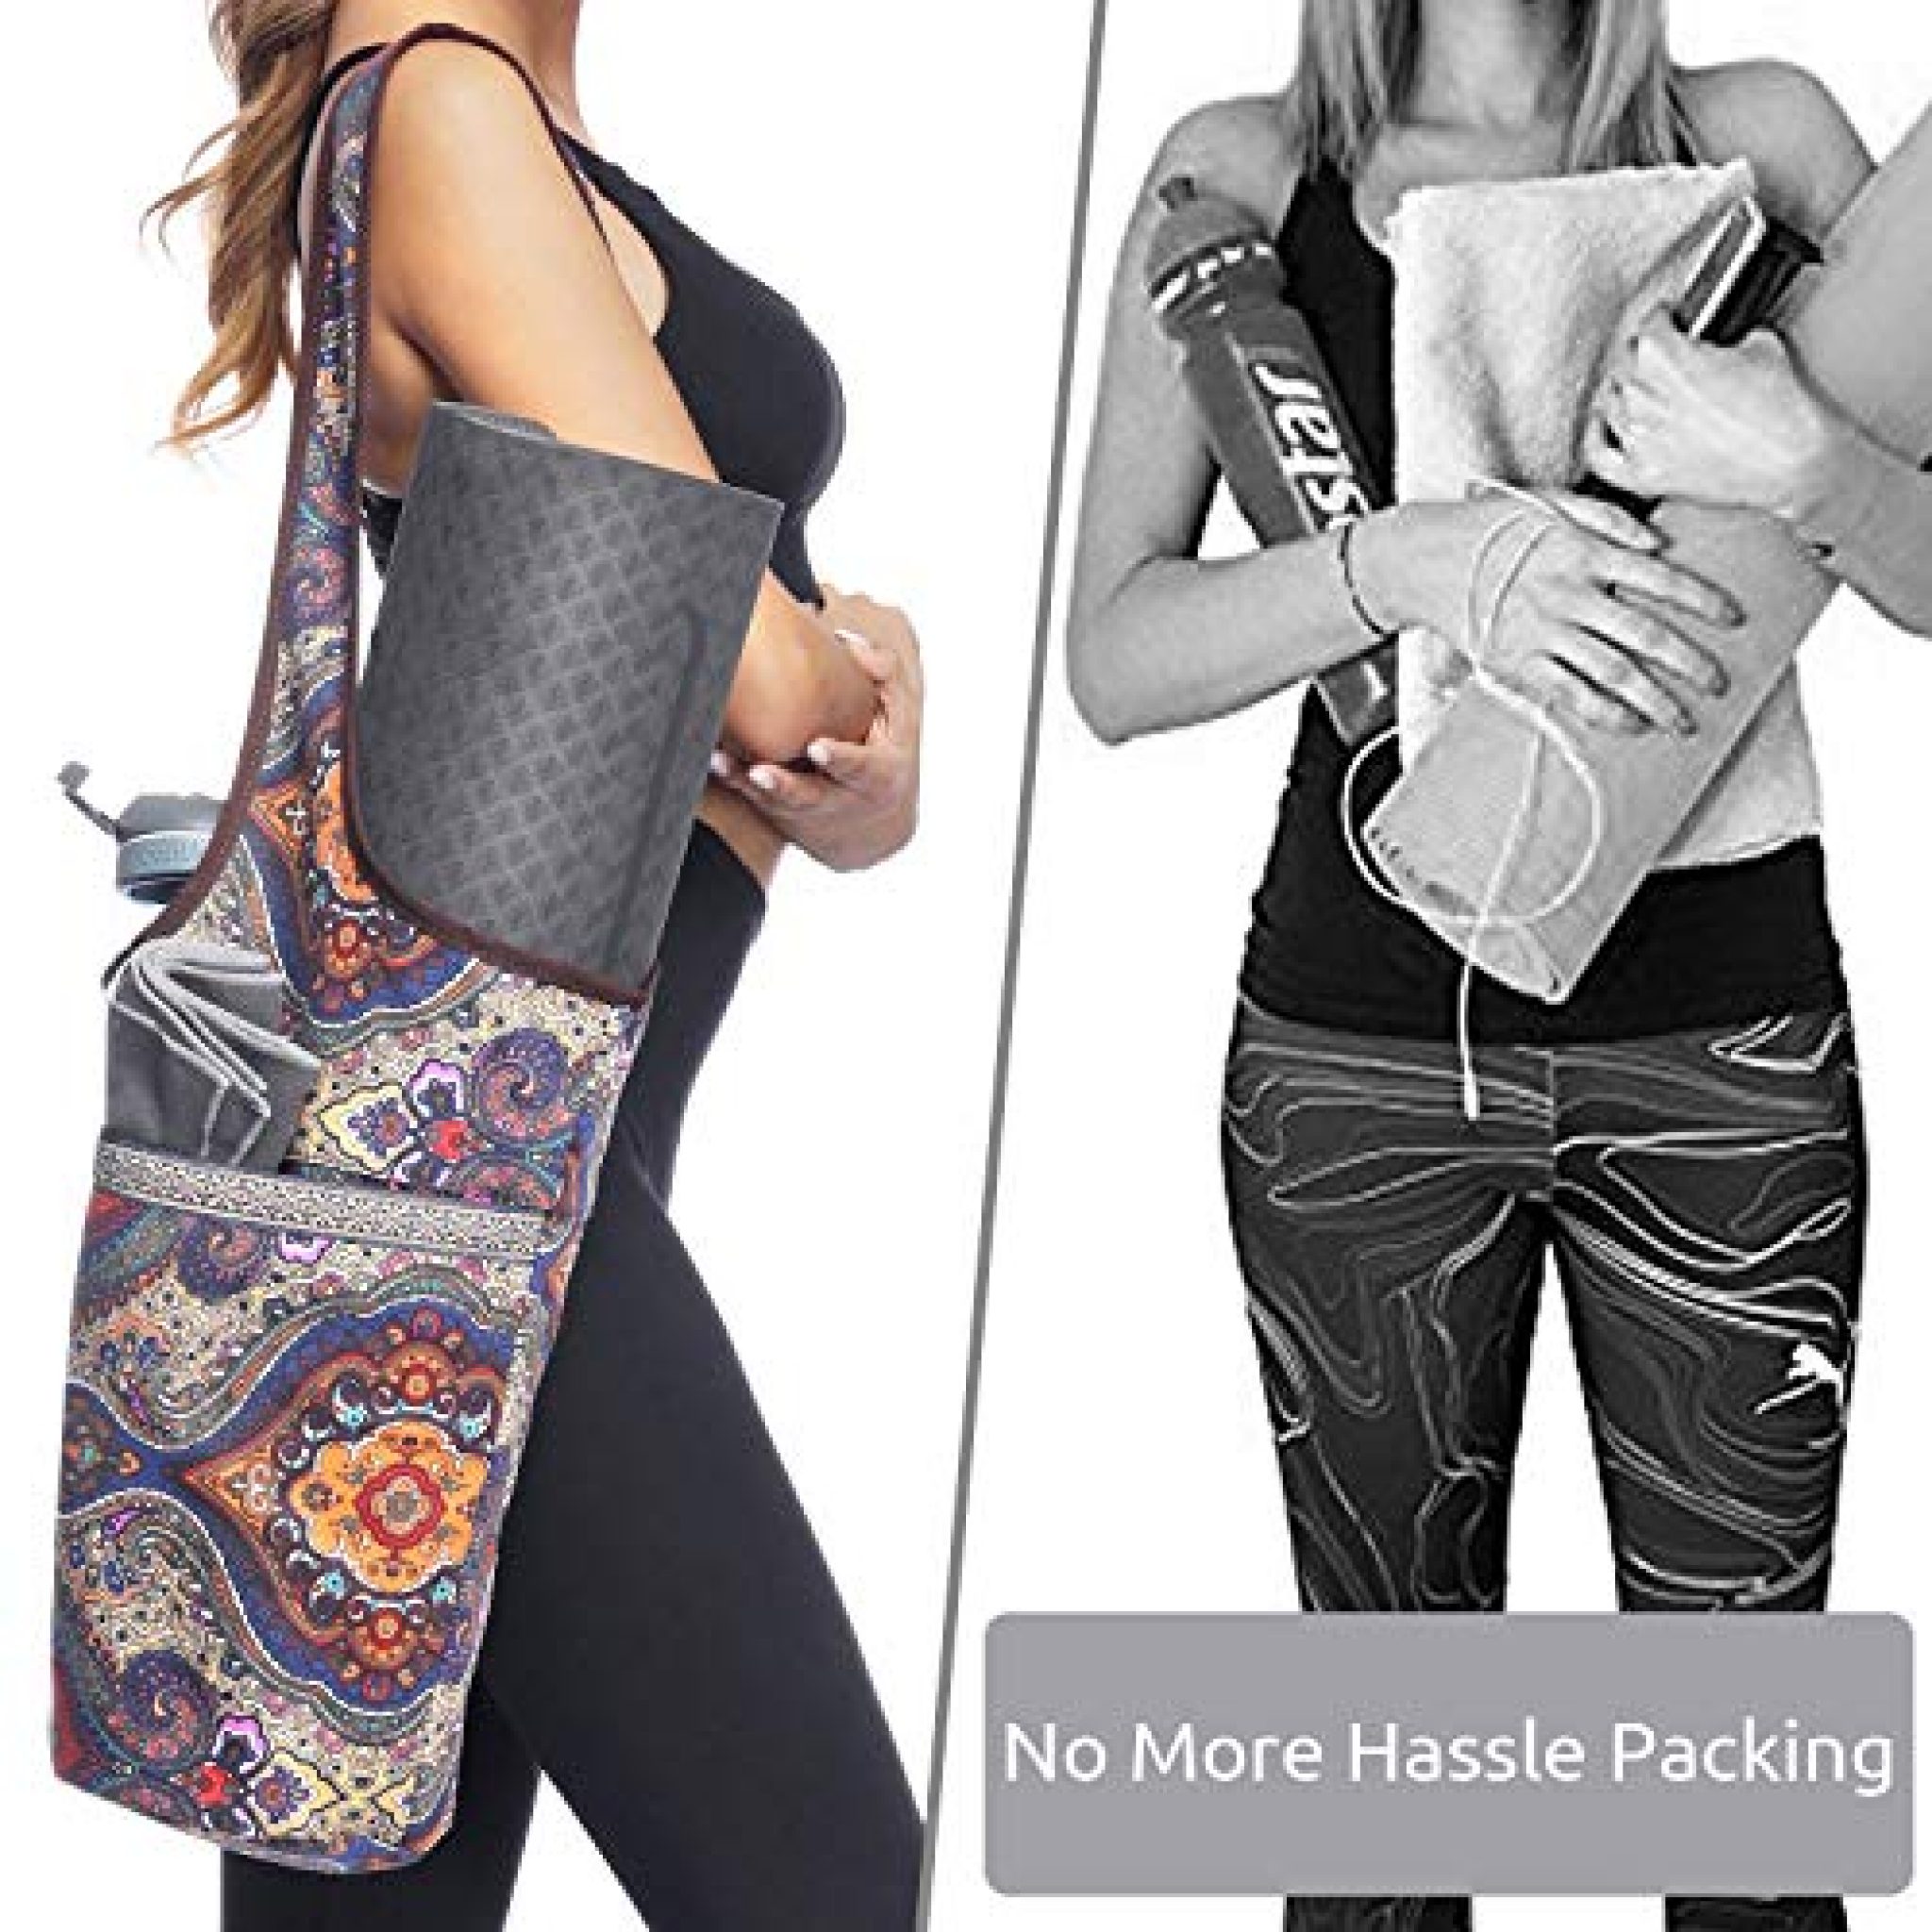 Ewedoos Yoga Mat Bag with Large Size Pocket and Zipper Pocket, Fit Most